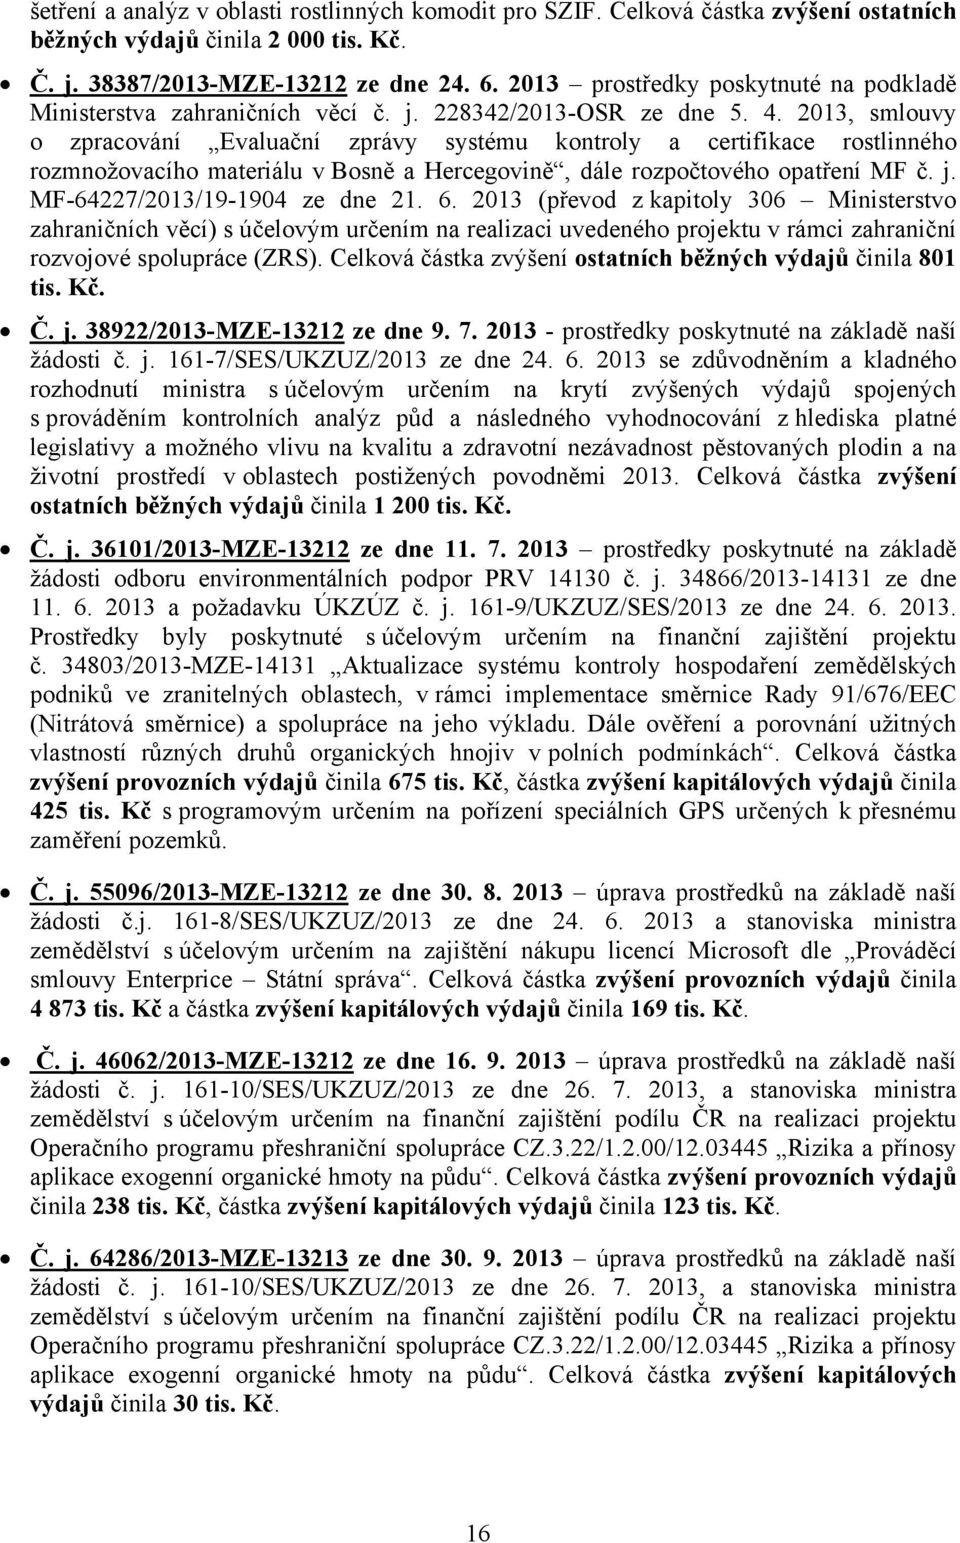 2013, smlouvy o zpracování Evaluační zprávy systému kontroly a certifikace rostlinného rozmnožovacího materiálu v Bosně a Hercegovině, dále rozpočtového opatření MF č. j.